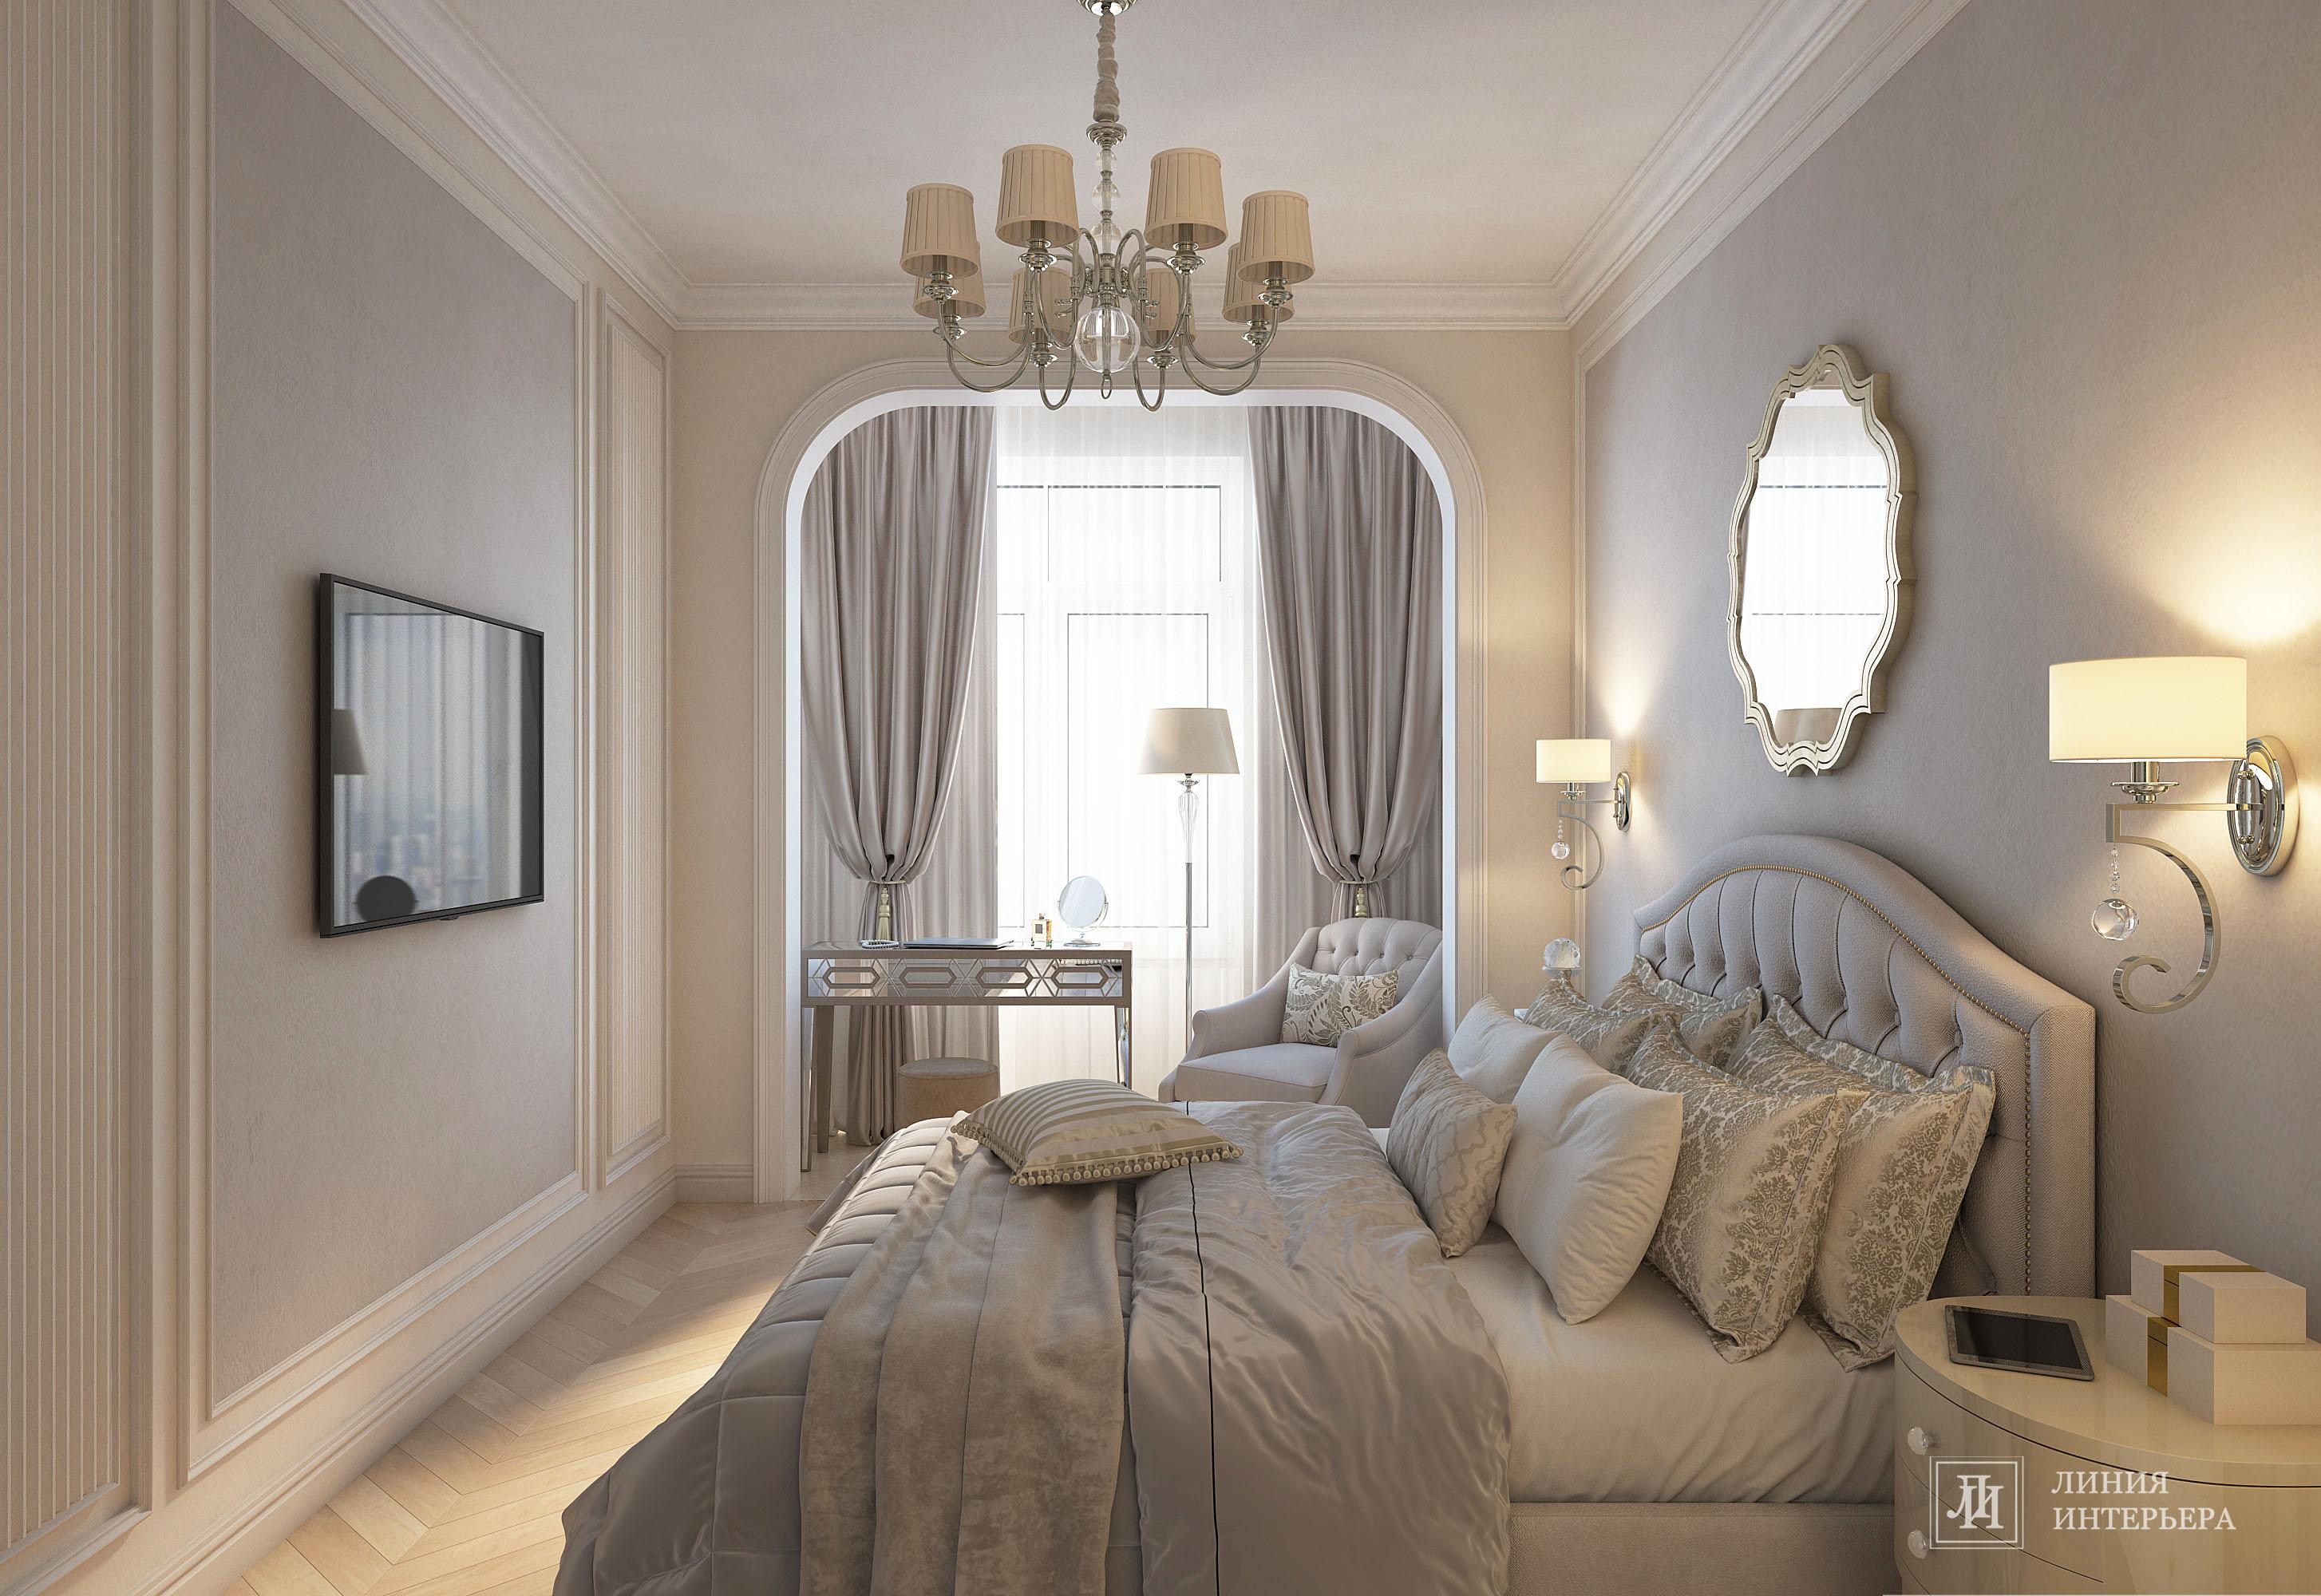 Интерьер спальни cветильниками над кроватью в неоклассике, в классическом стиле и готике